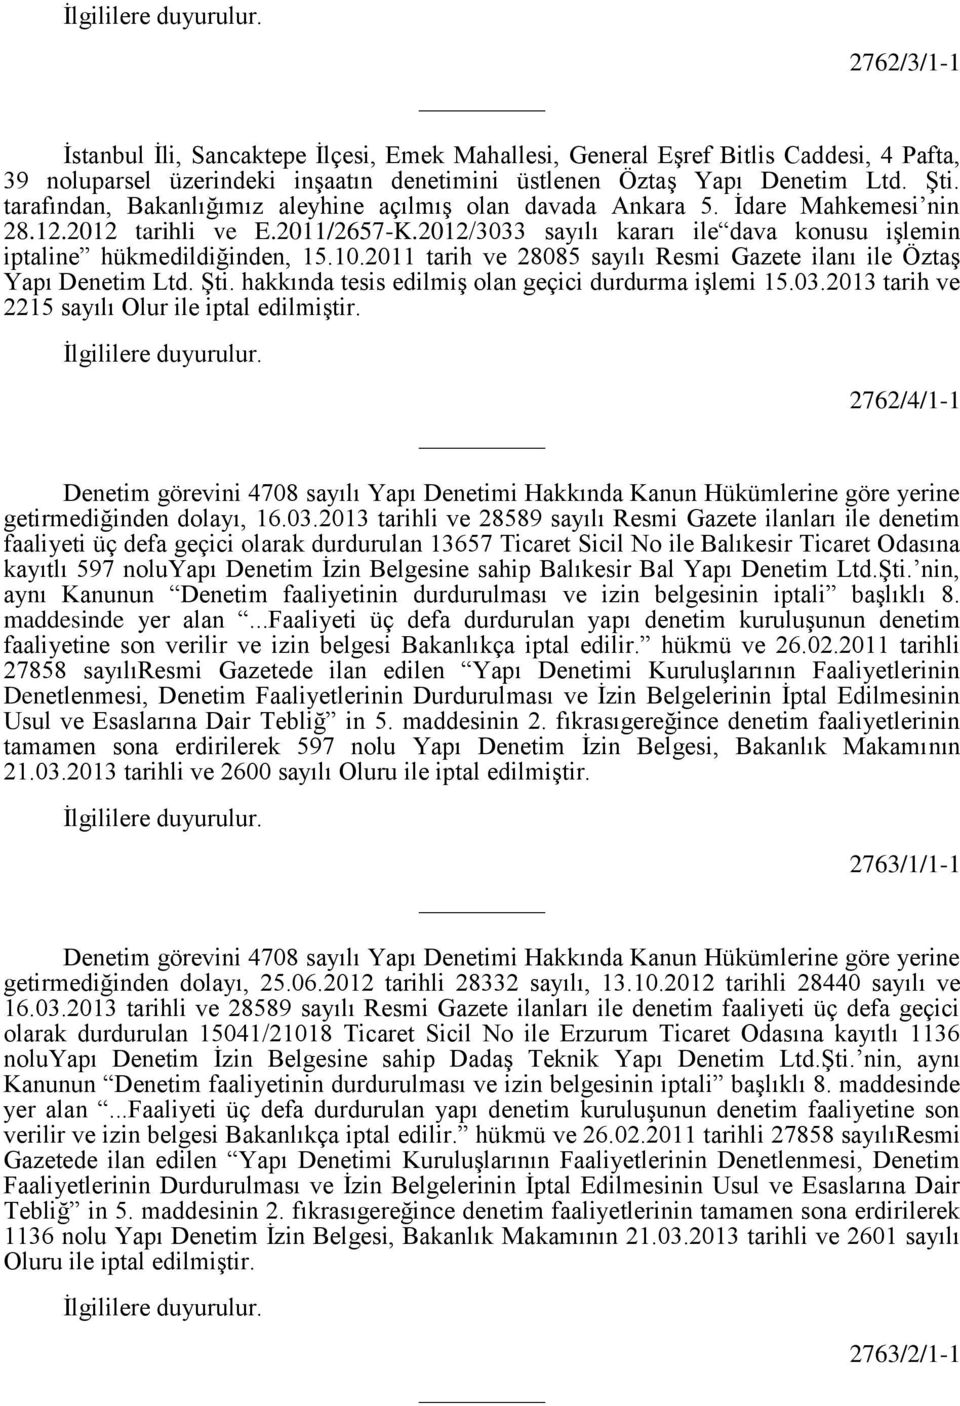 10.2011 tarih ve 28085 sayılı Resmi Gazete ilanı ile Öztaş Yapı Denetim Ltd. Şti. hakkında tesis edilmiş olan geçici durdurma işlemi 15.03.2013 tarih ve 2215 sayılı Olur ile iptal edilmiştir.